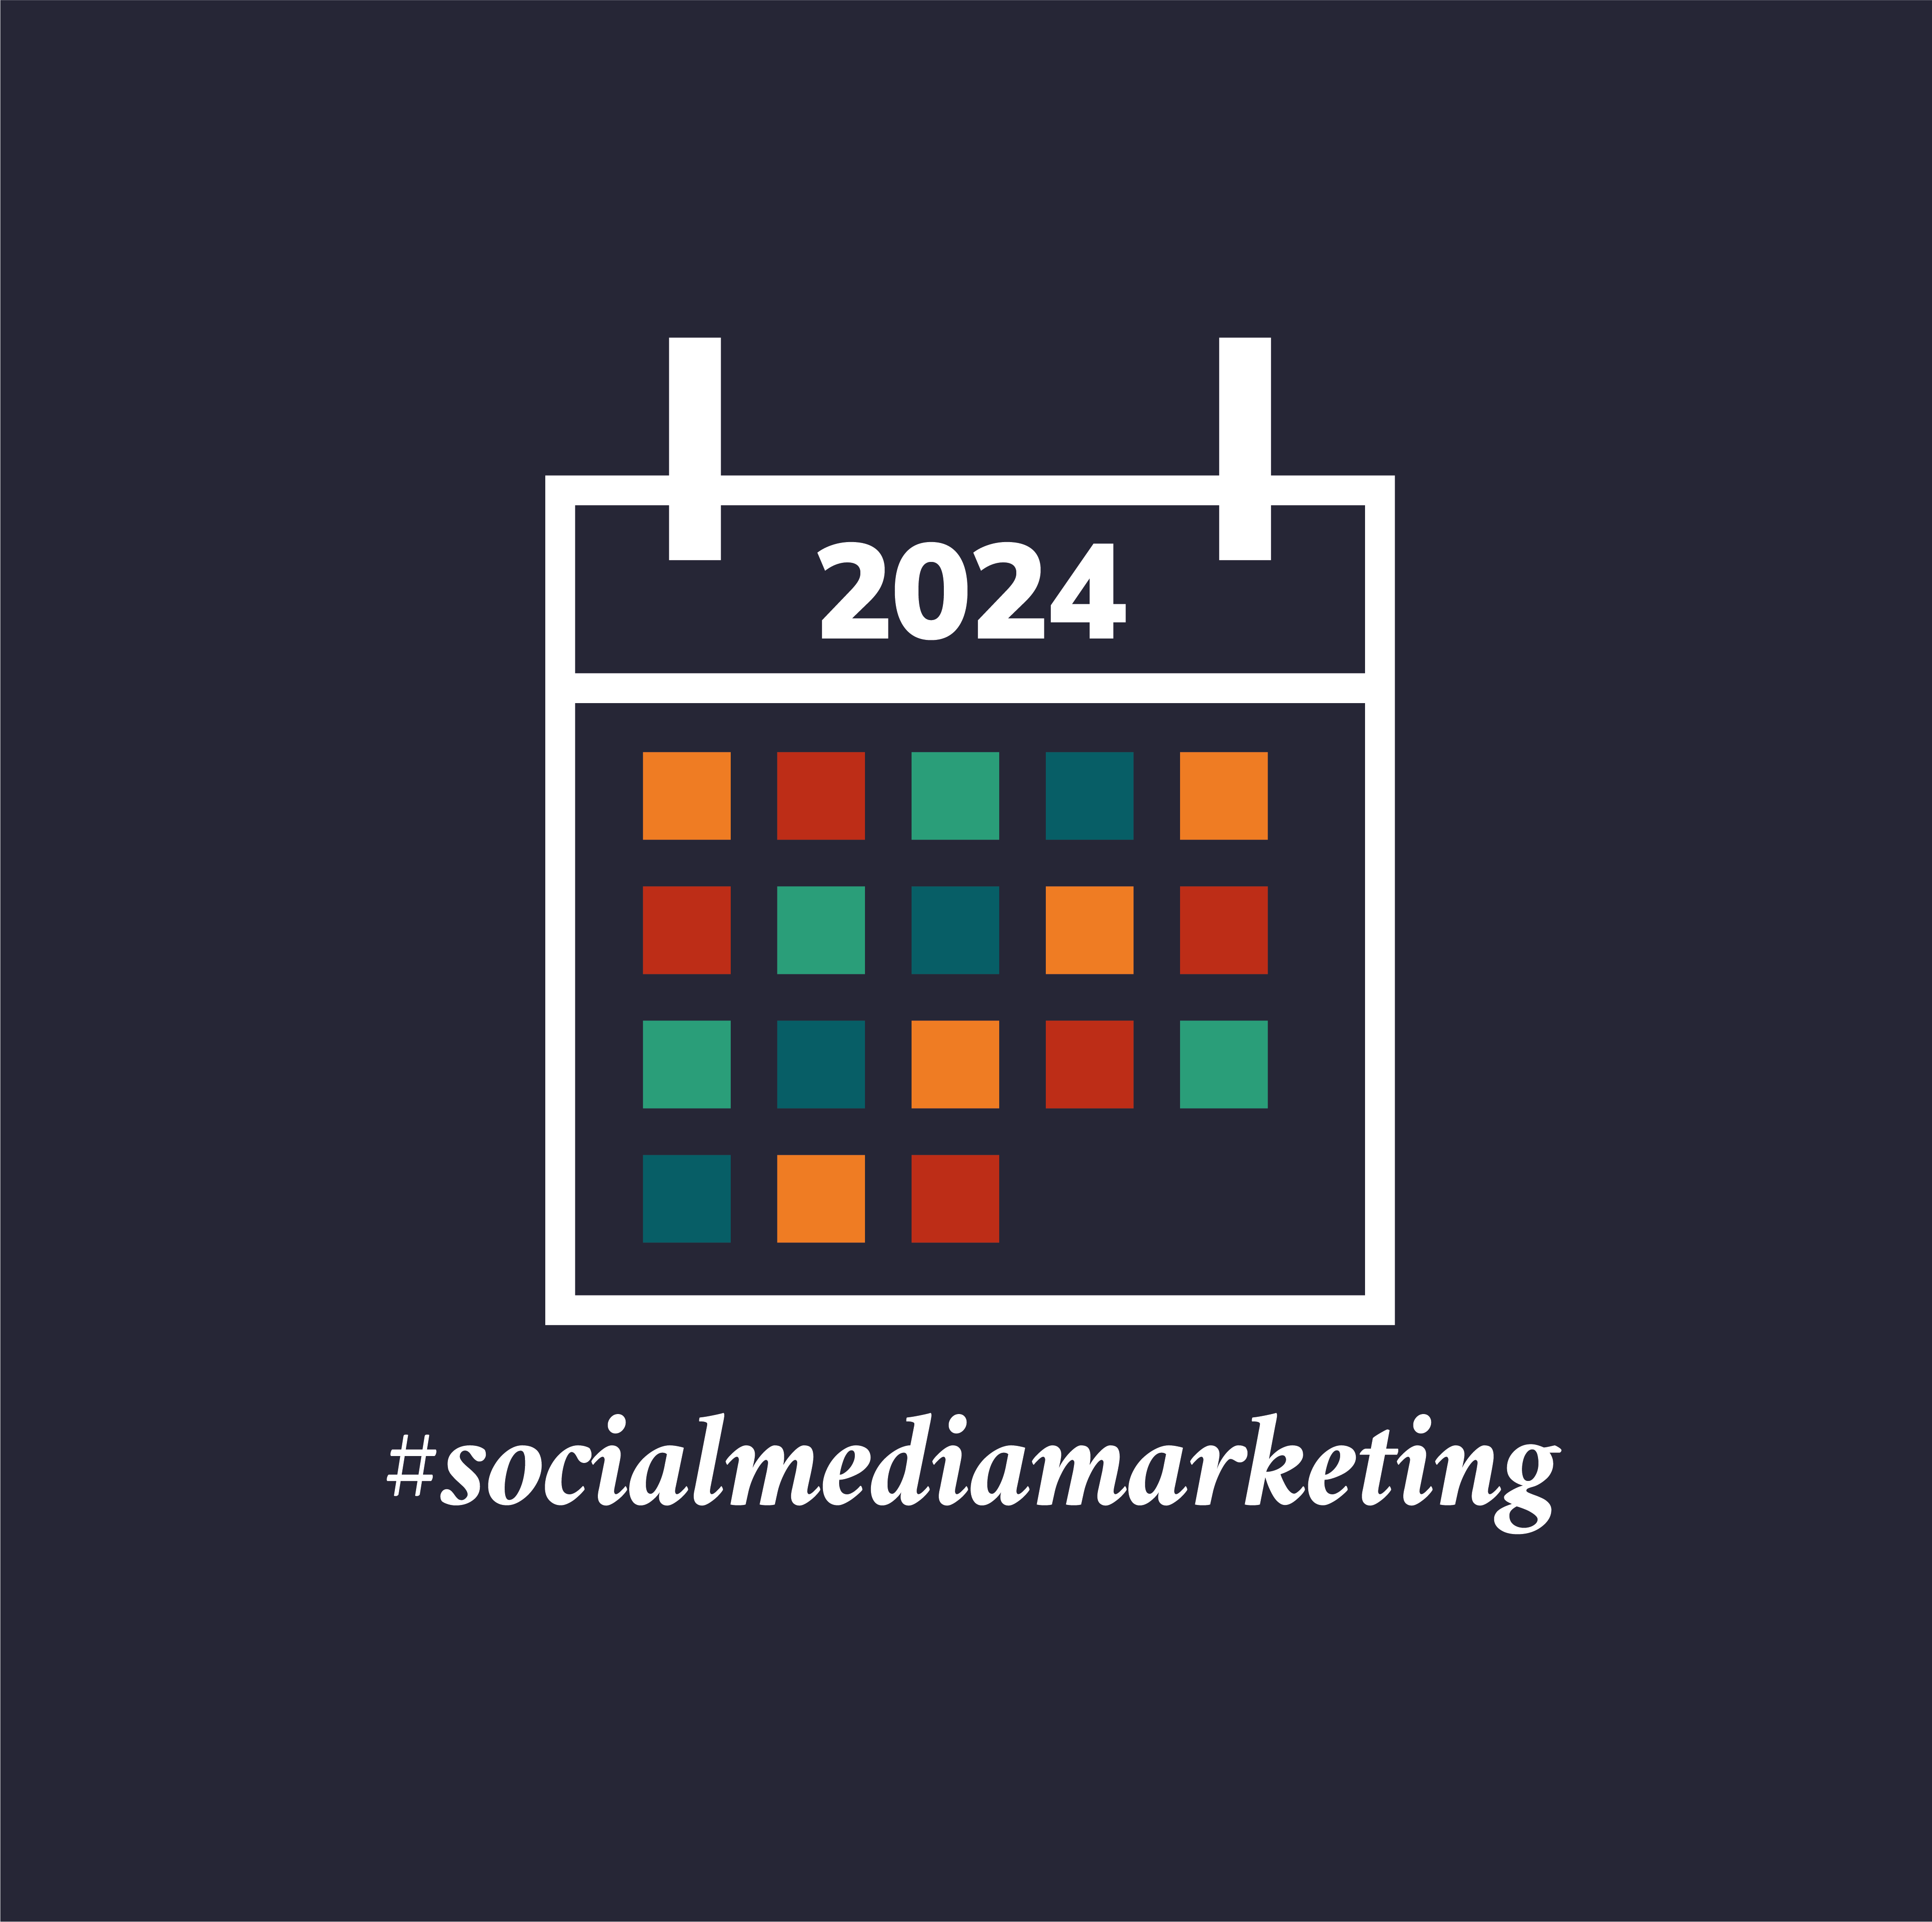 social media marketing dates 2024